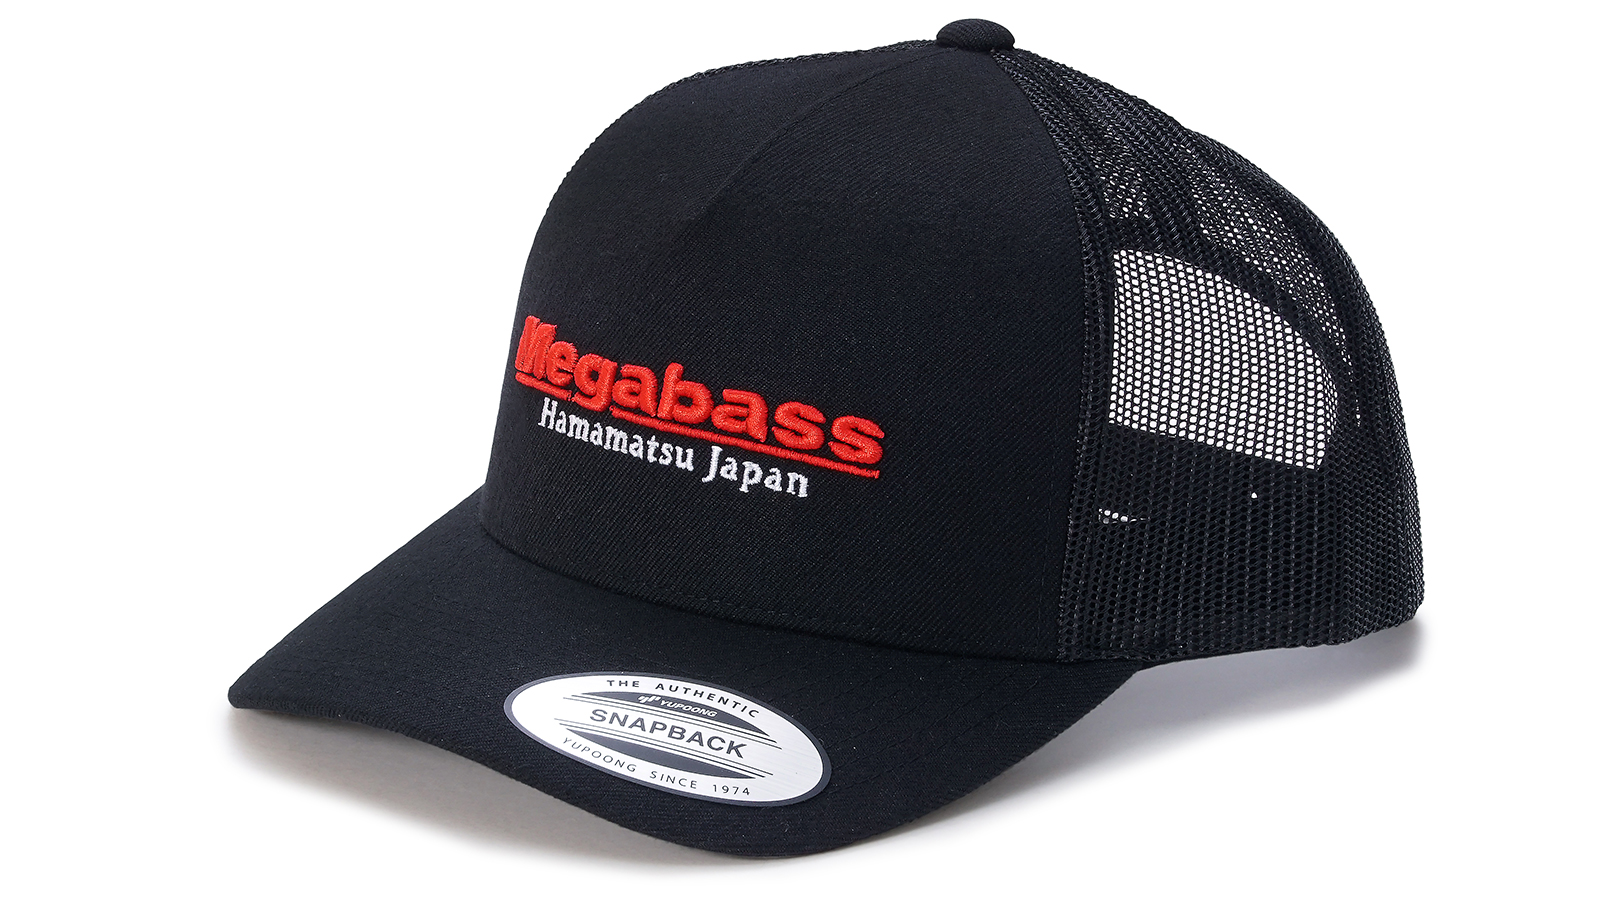 CLASSIC TRUCKER BLACK/RED - Megabass